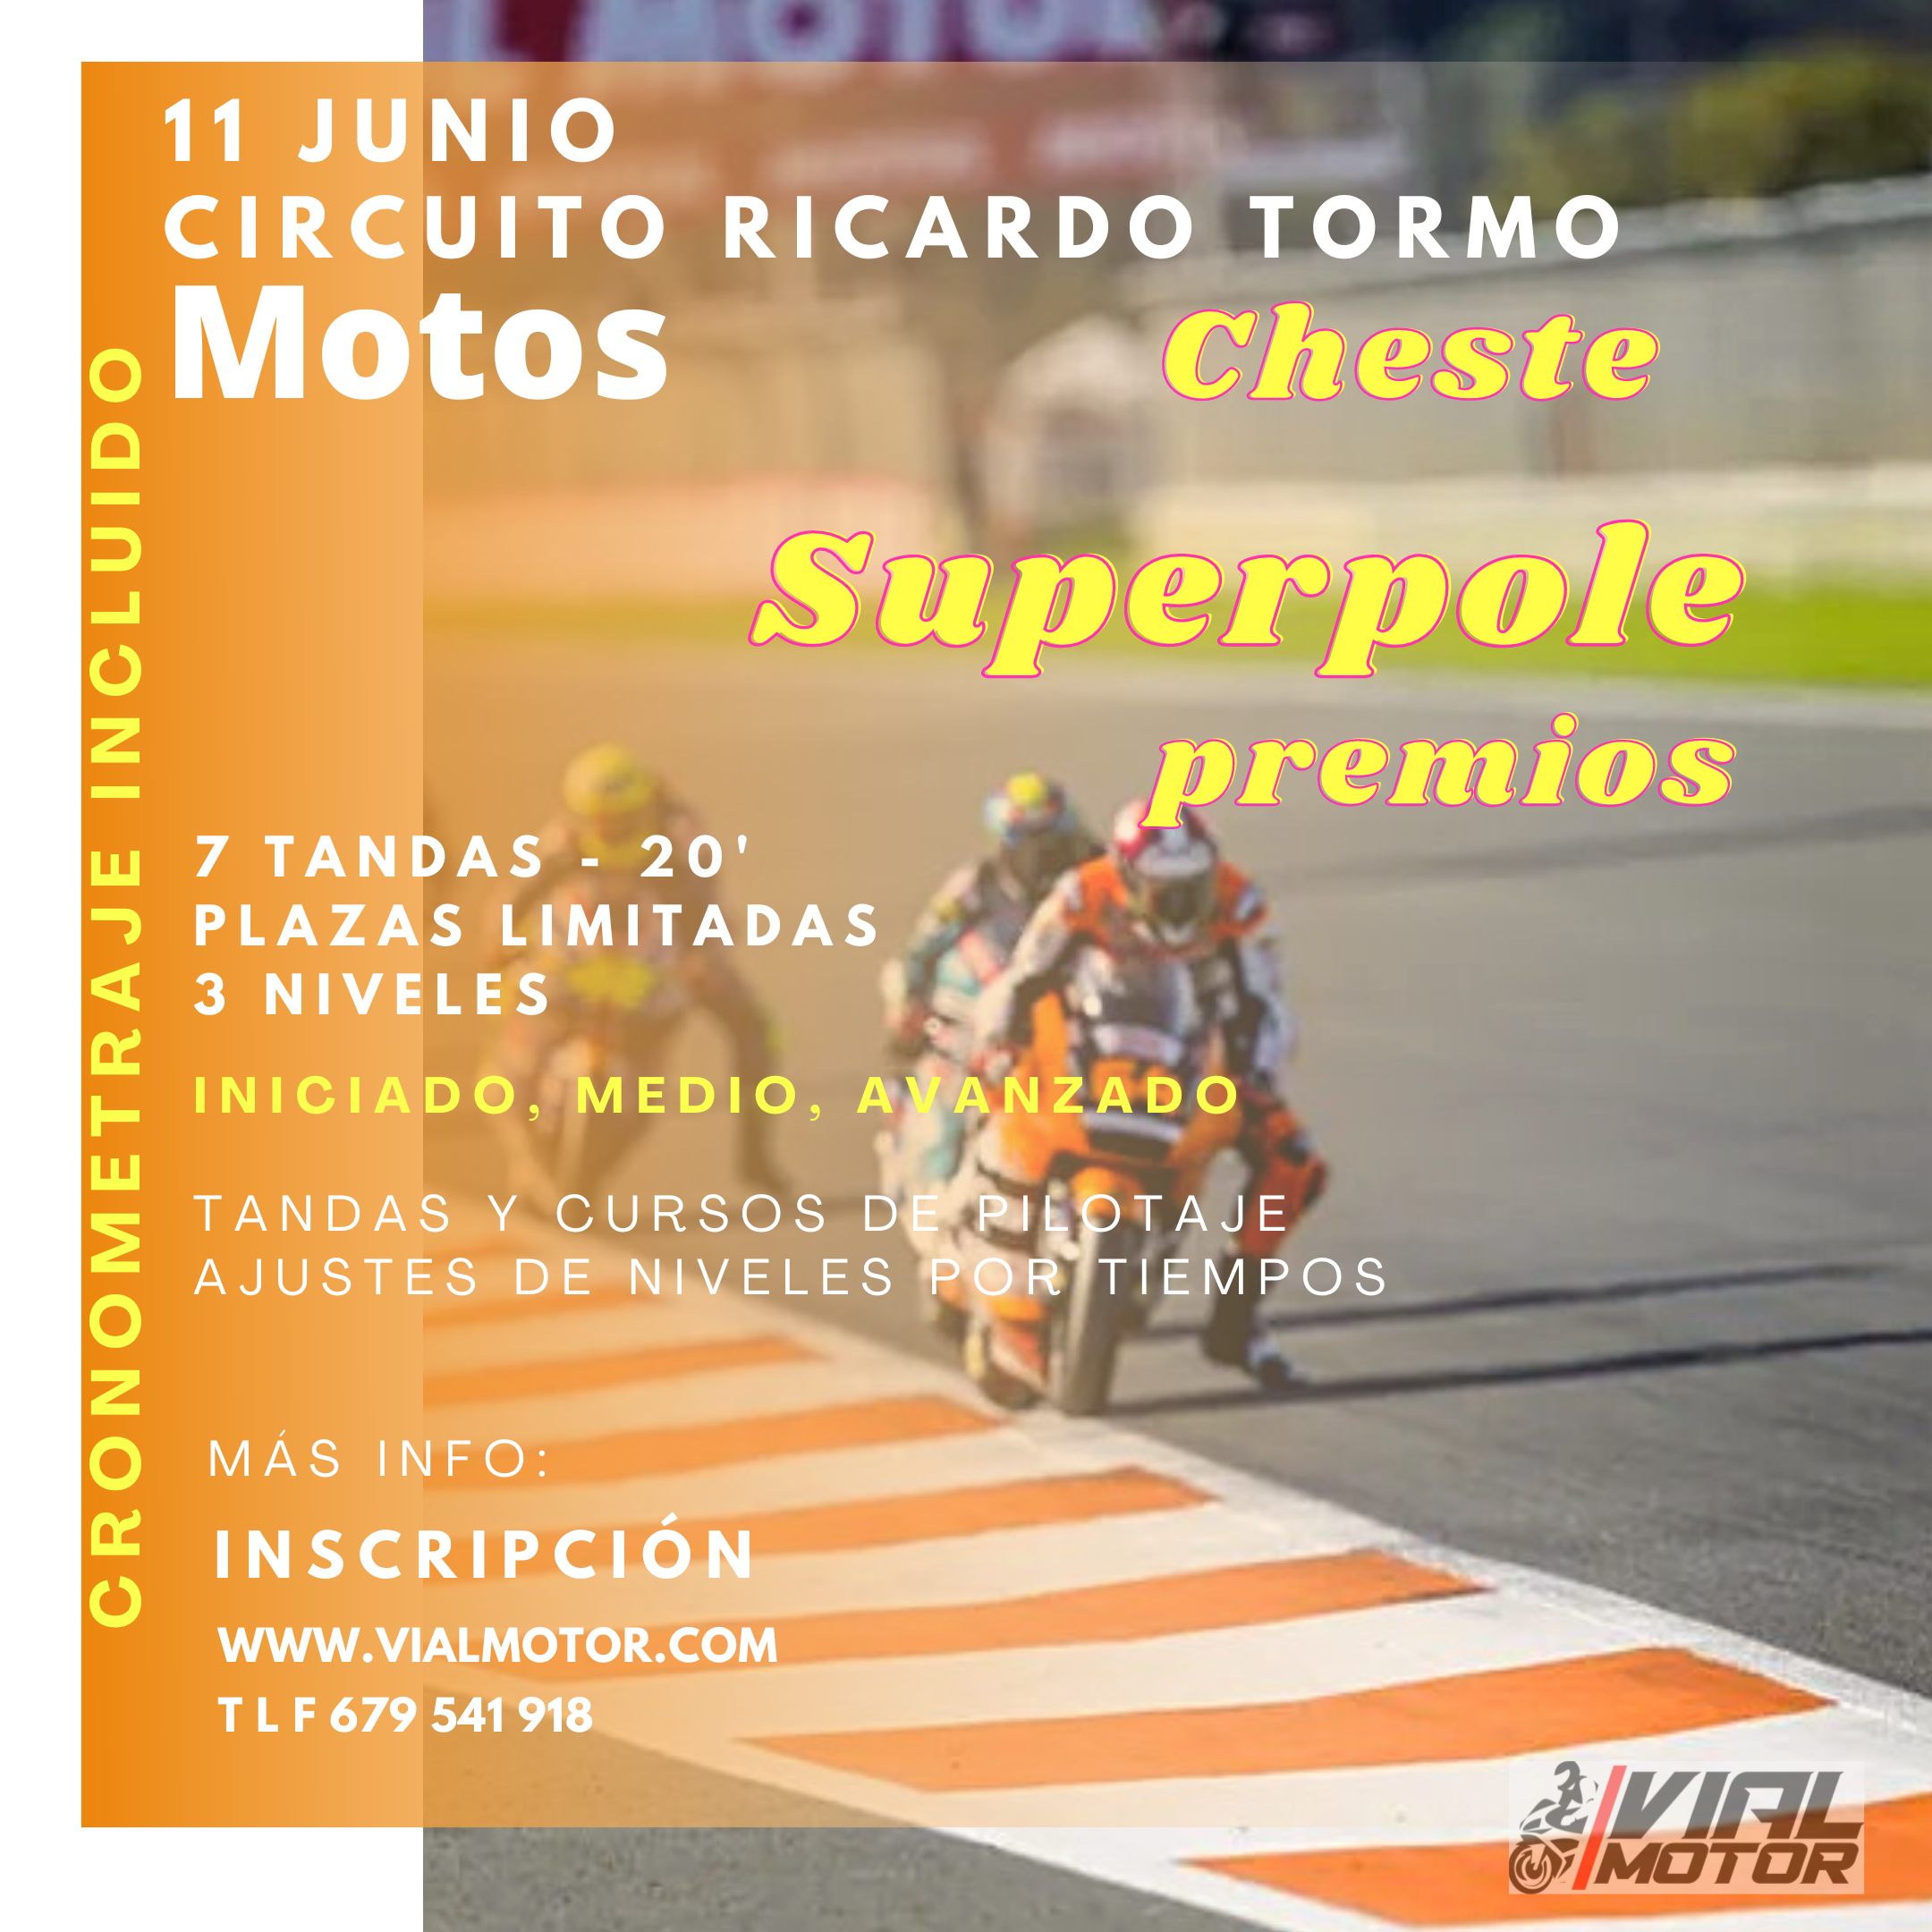 Circuito de Cheste 11 de Junio. Rodada de motos. Vialmotor